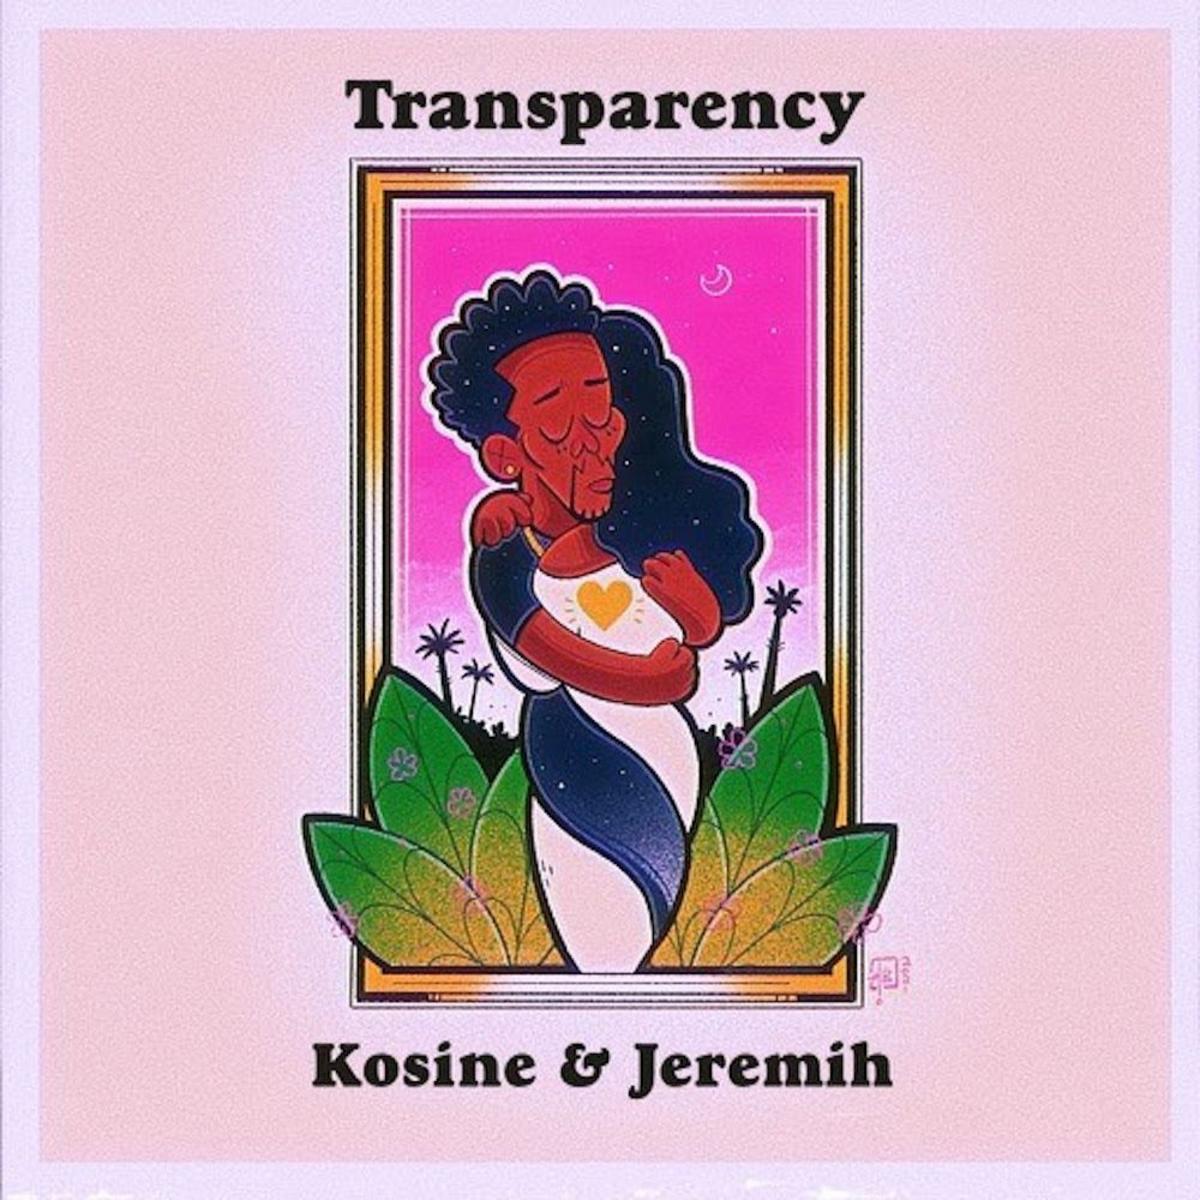 Kosine & Jeremih Unite For “Transparency”